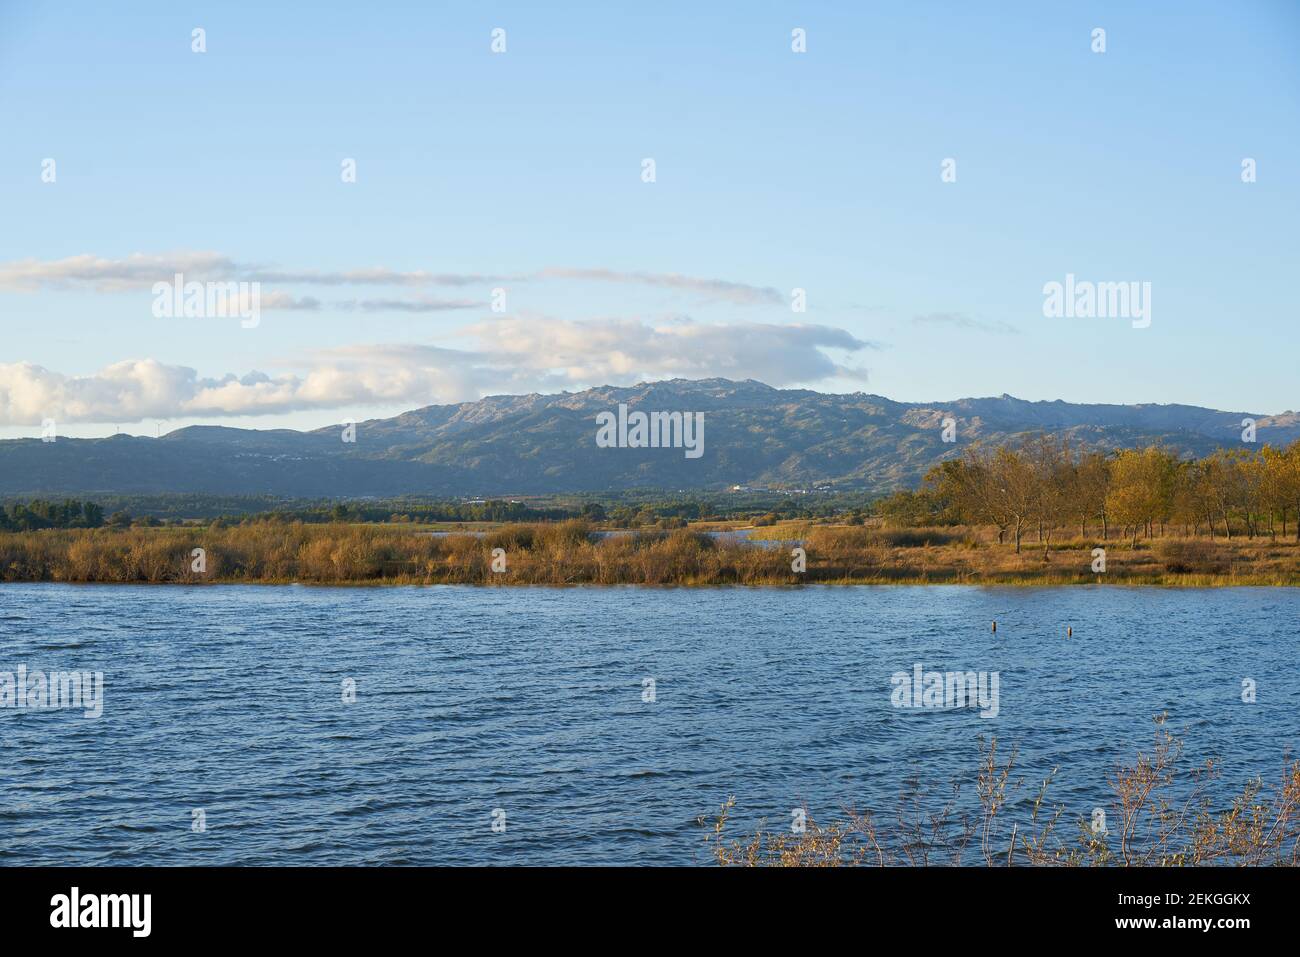 Paisaje de la presa del lago con reflejo de las montañas y los árboles de Gardunha En un día nublado en la presa de Santa Agueda Marateca en Portugal Foto de stock